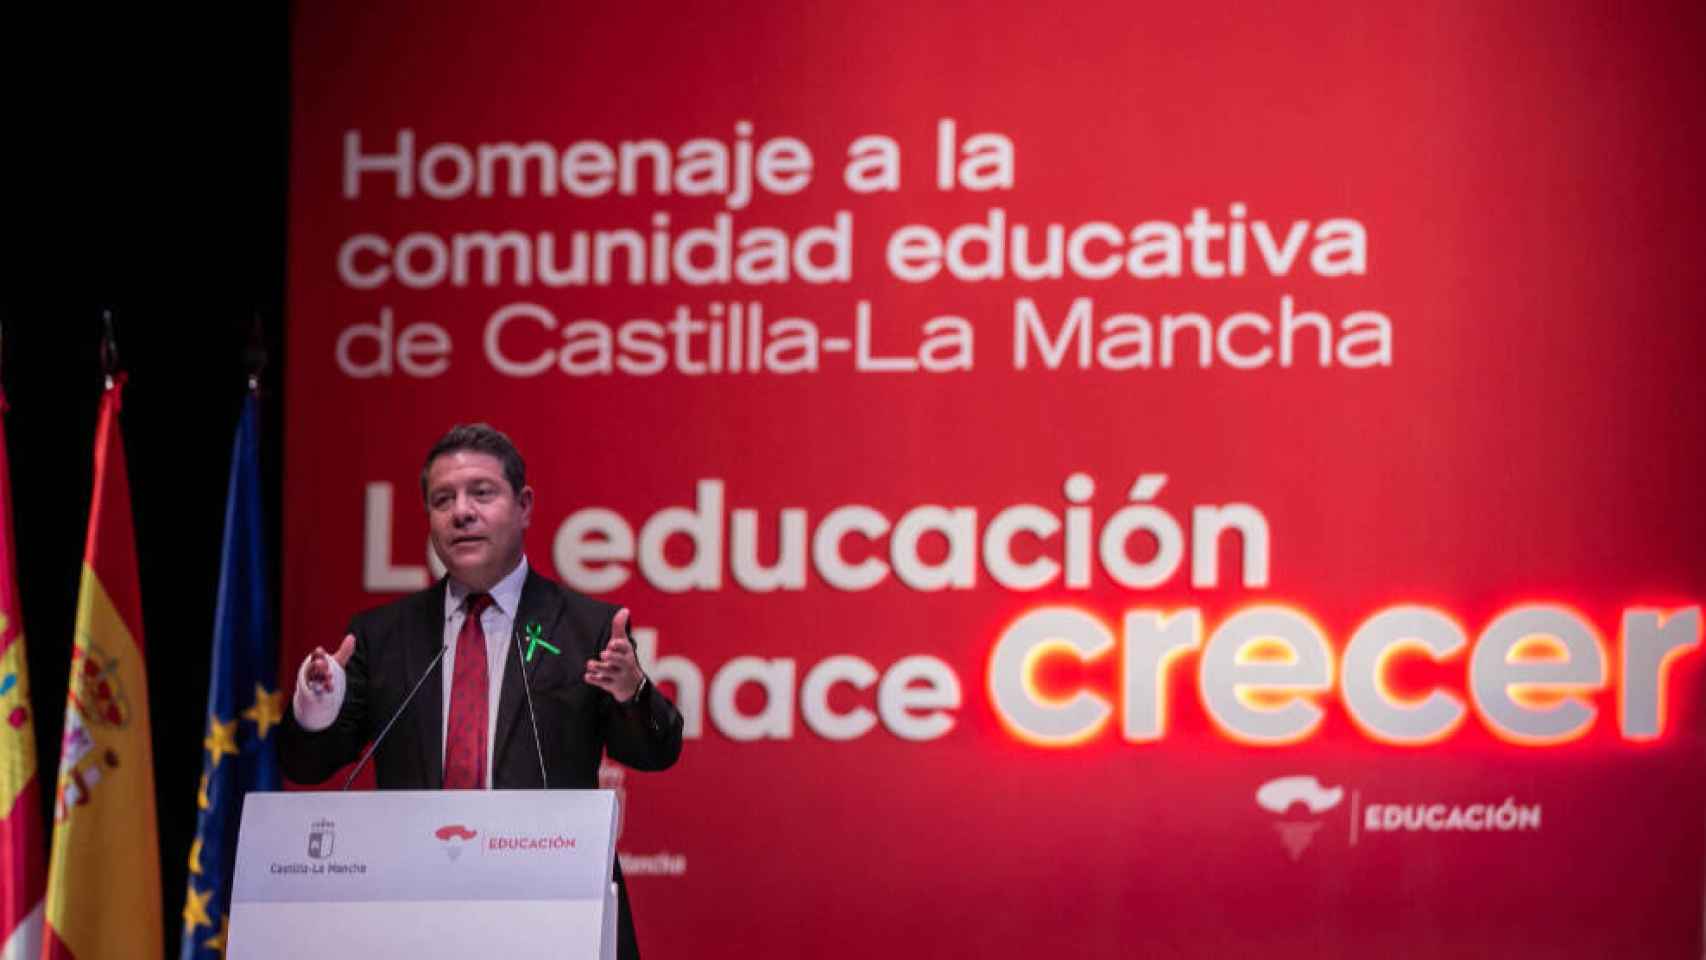 El presidente de Castilla-La Mancha, Emiliano García-Page, este lunes en el homenaje de la región a la comunidad educativa